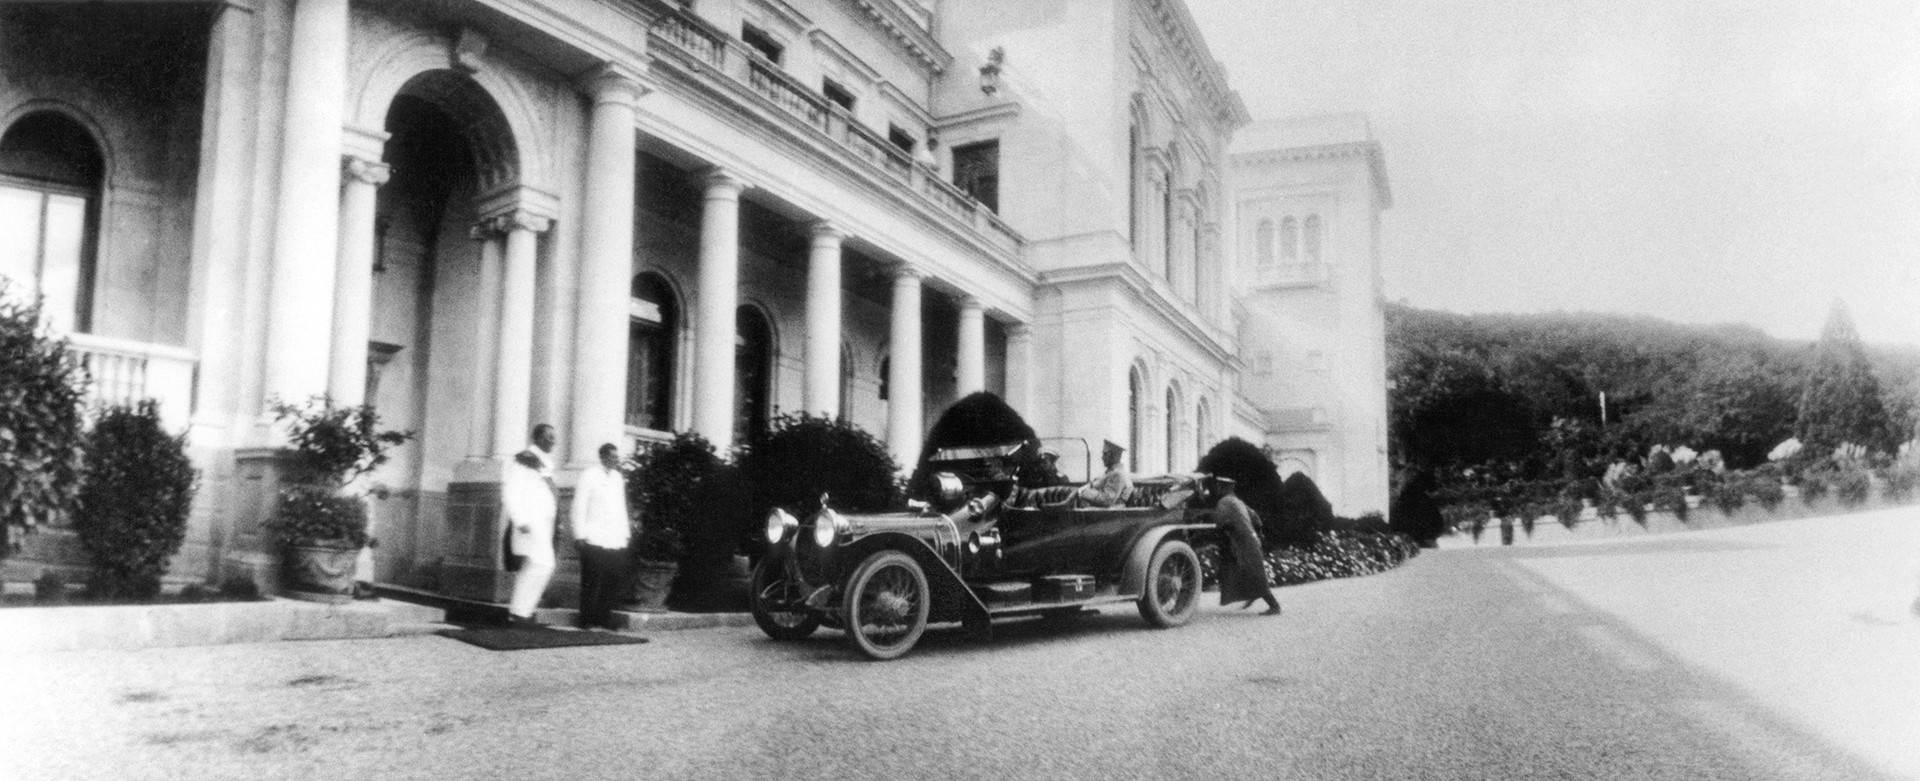 Livadia, Krimea, Kekaisaran Rusia. Tsar Nikolay II keluar dari sebuah mobil di Istana Livadia. Pria yang duduk di mobil adalah Vladimir Dedyulin yang bertanggung jawab atas keamanan Istana Tsar.